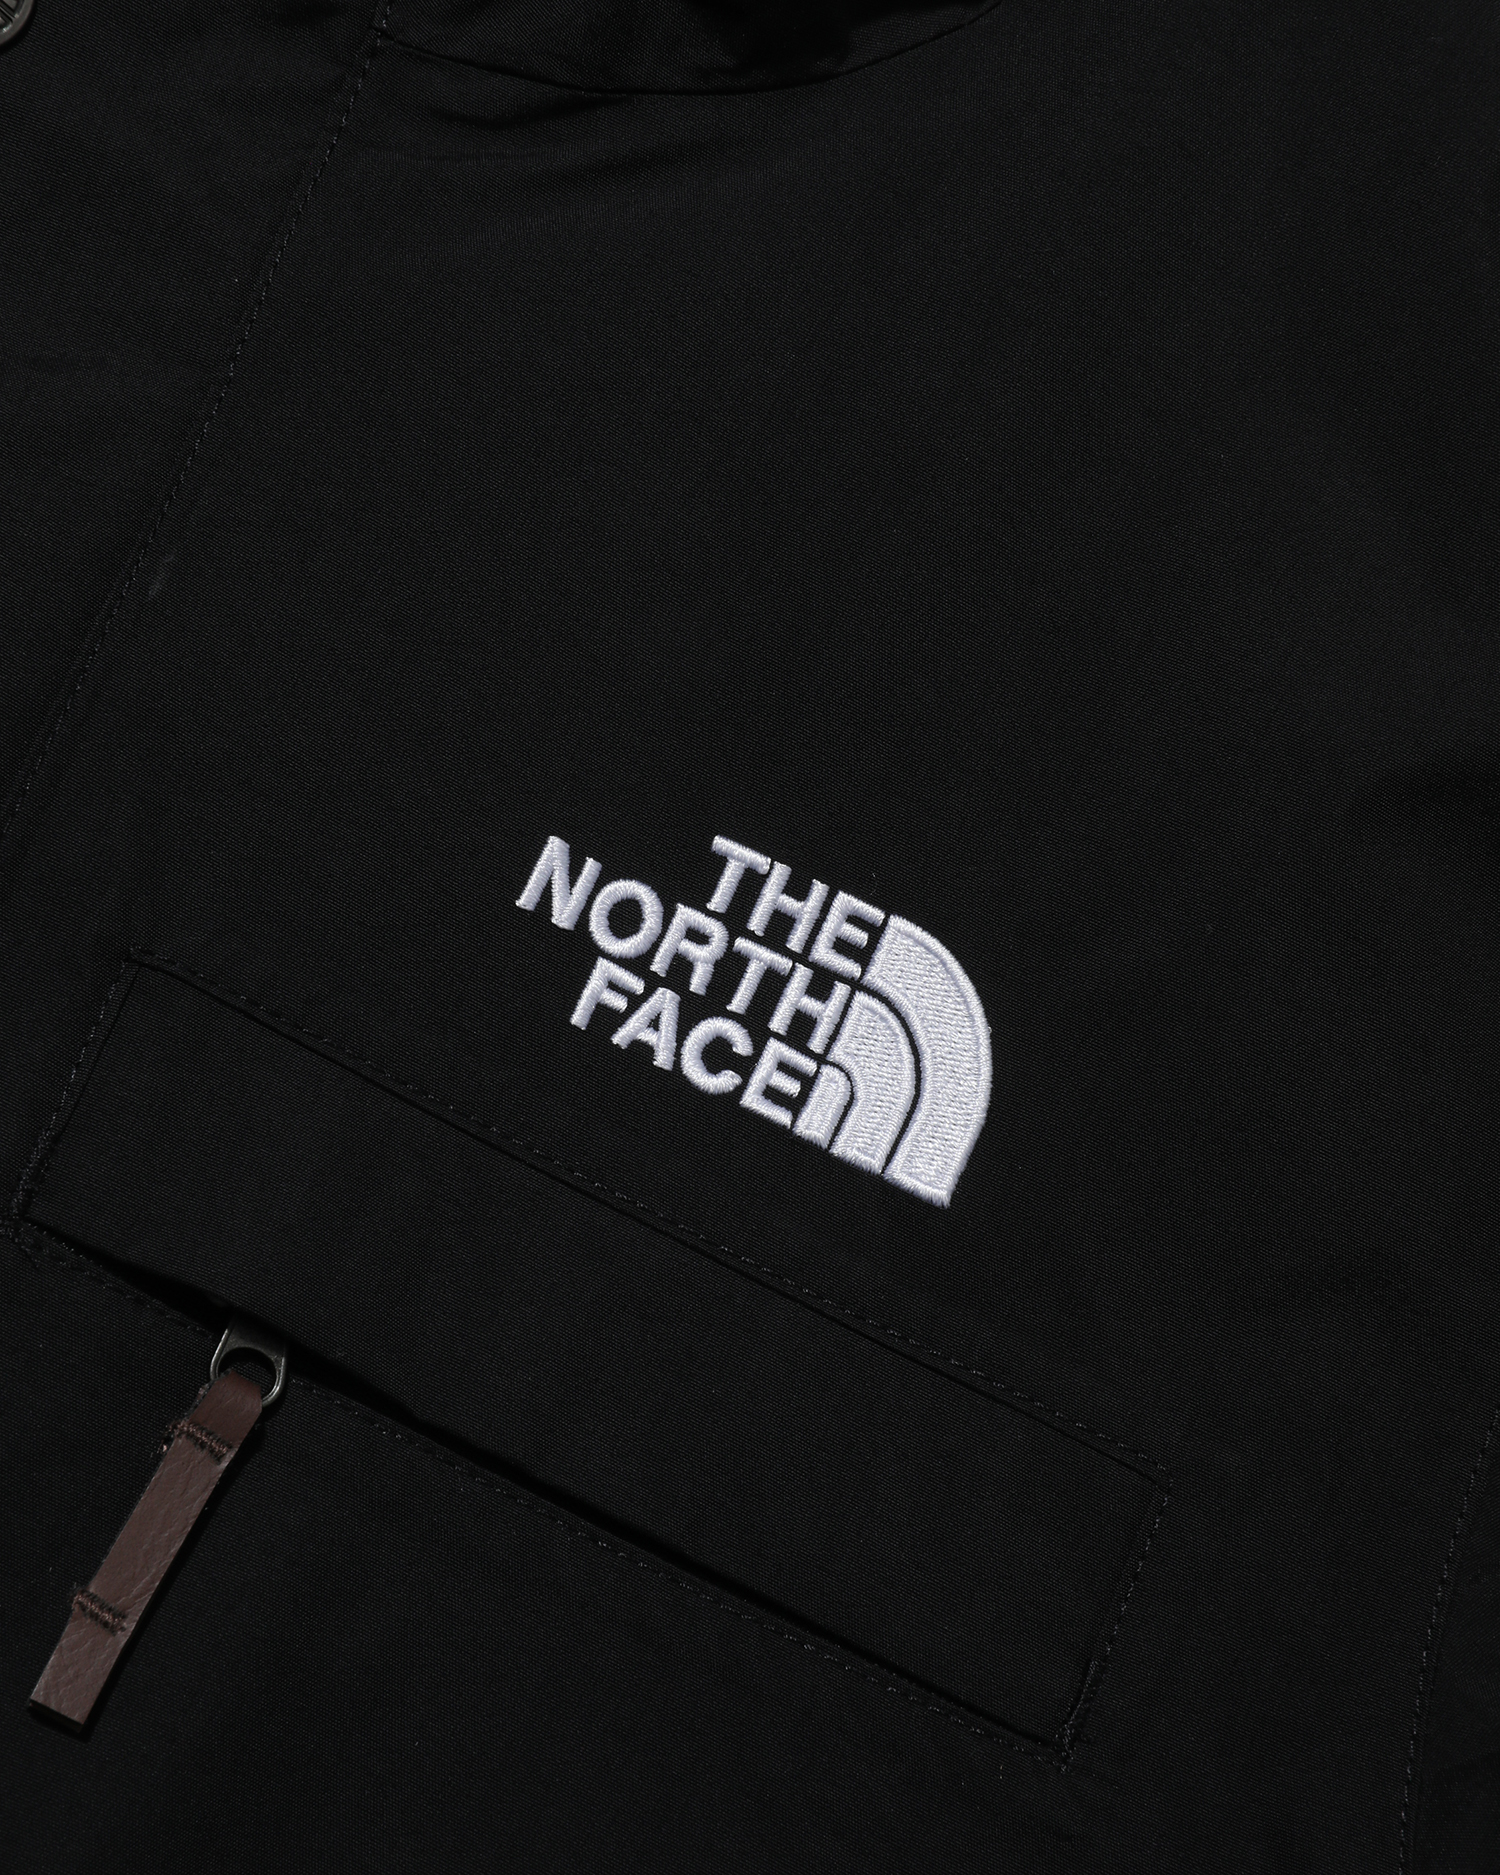 north face travel shirt